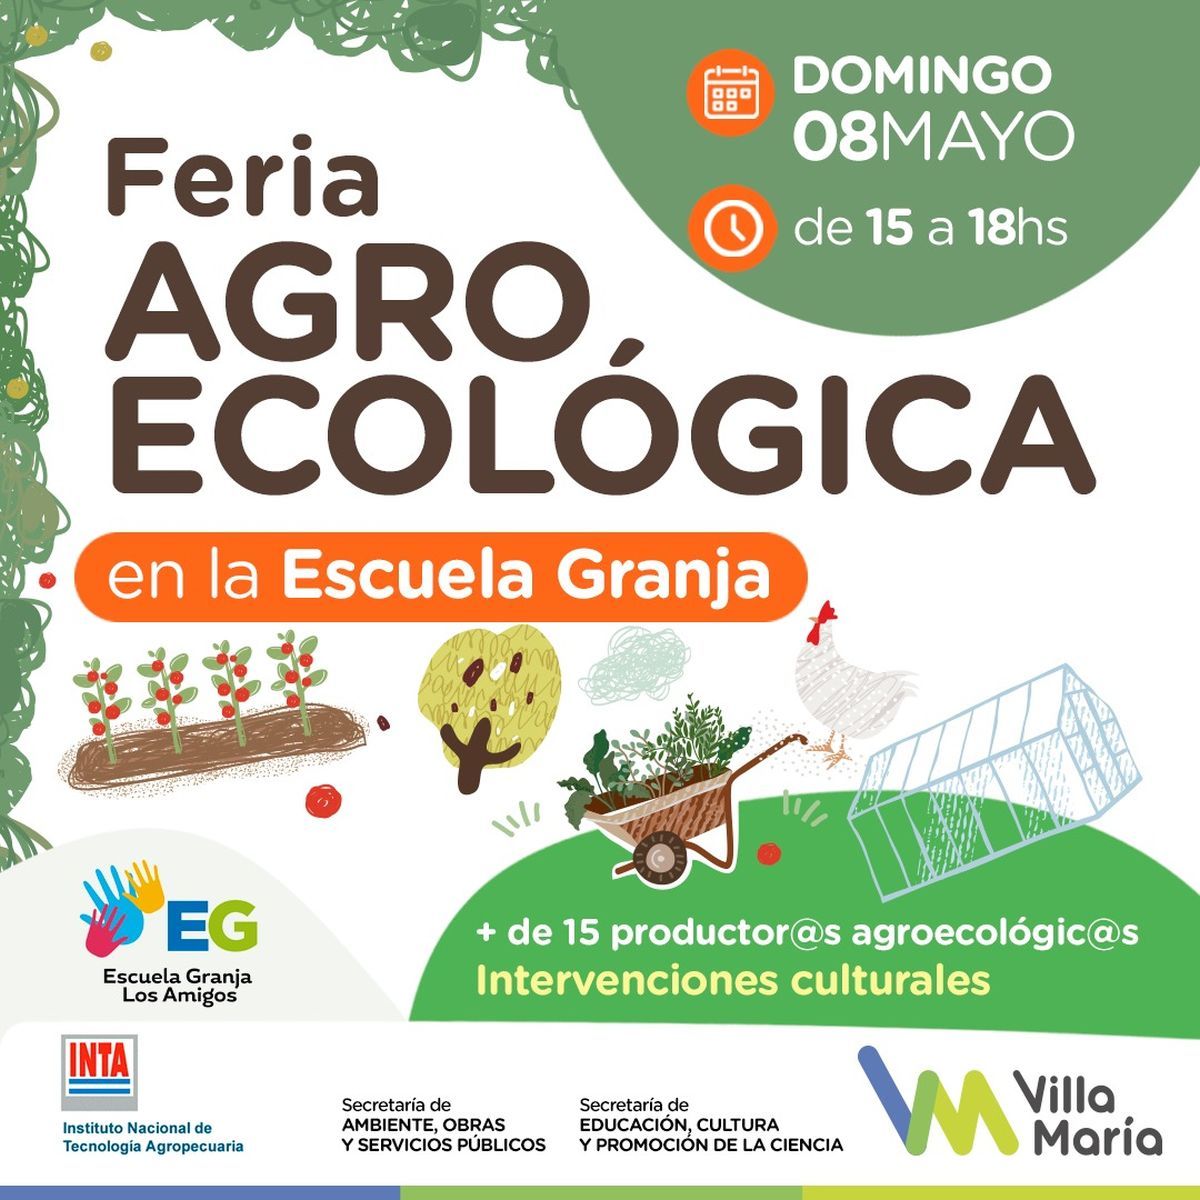 El domingo, habrá una nueva edición de la Feria Agroecológica